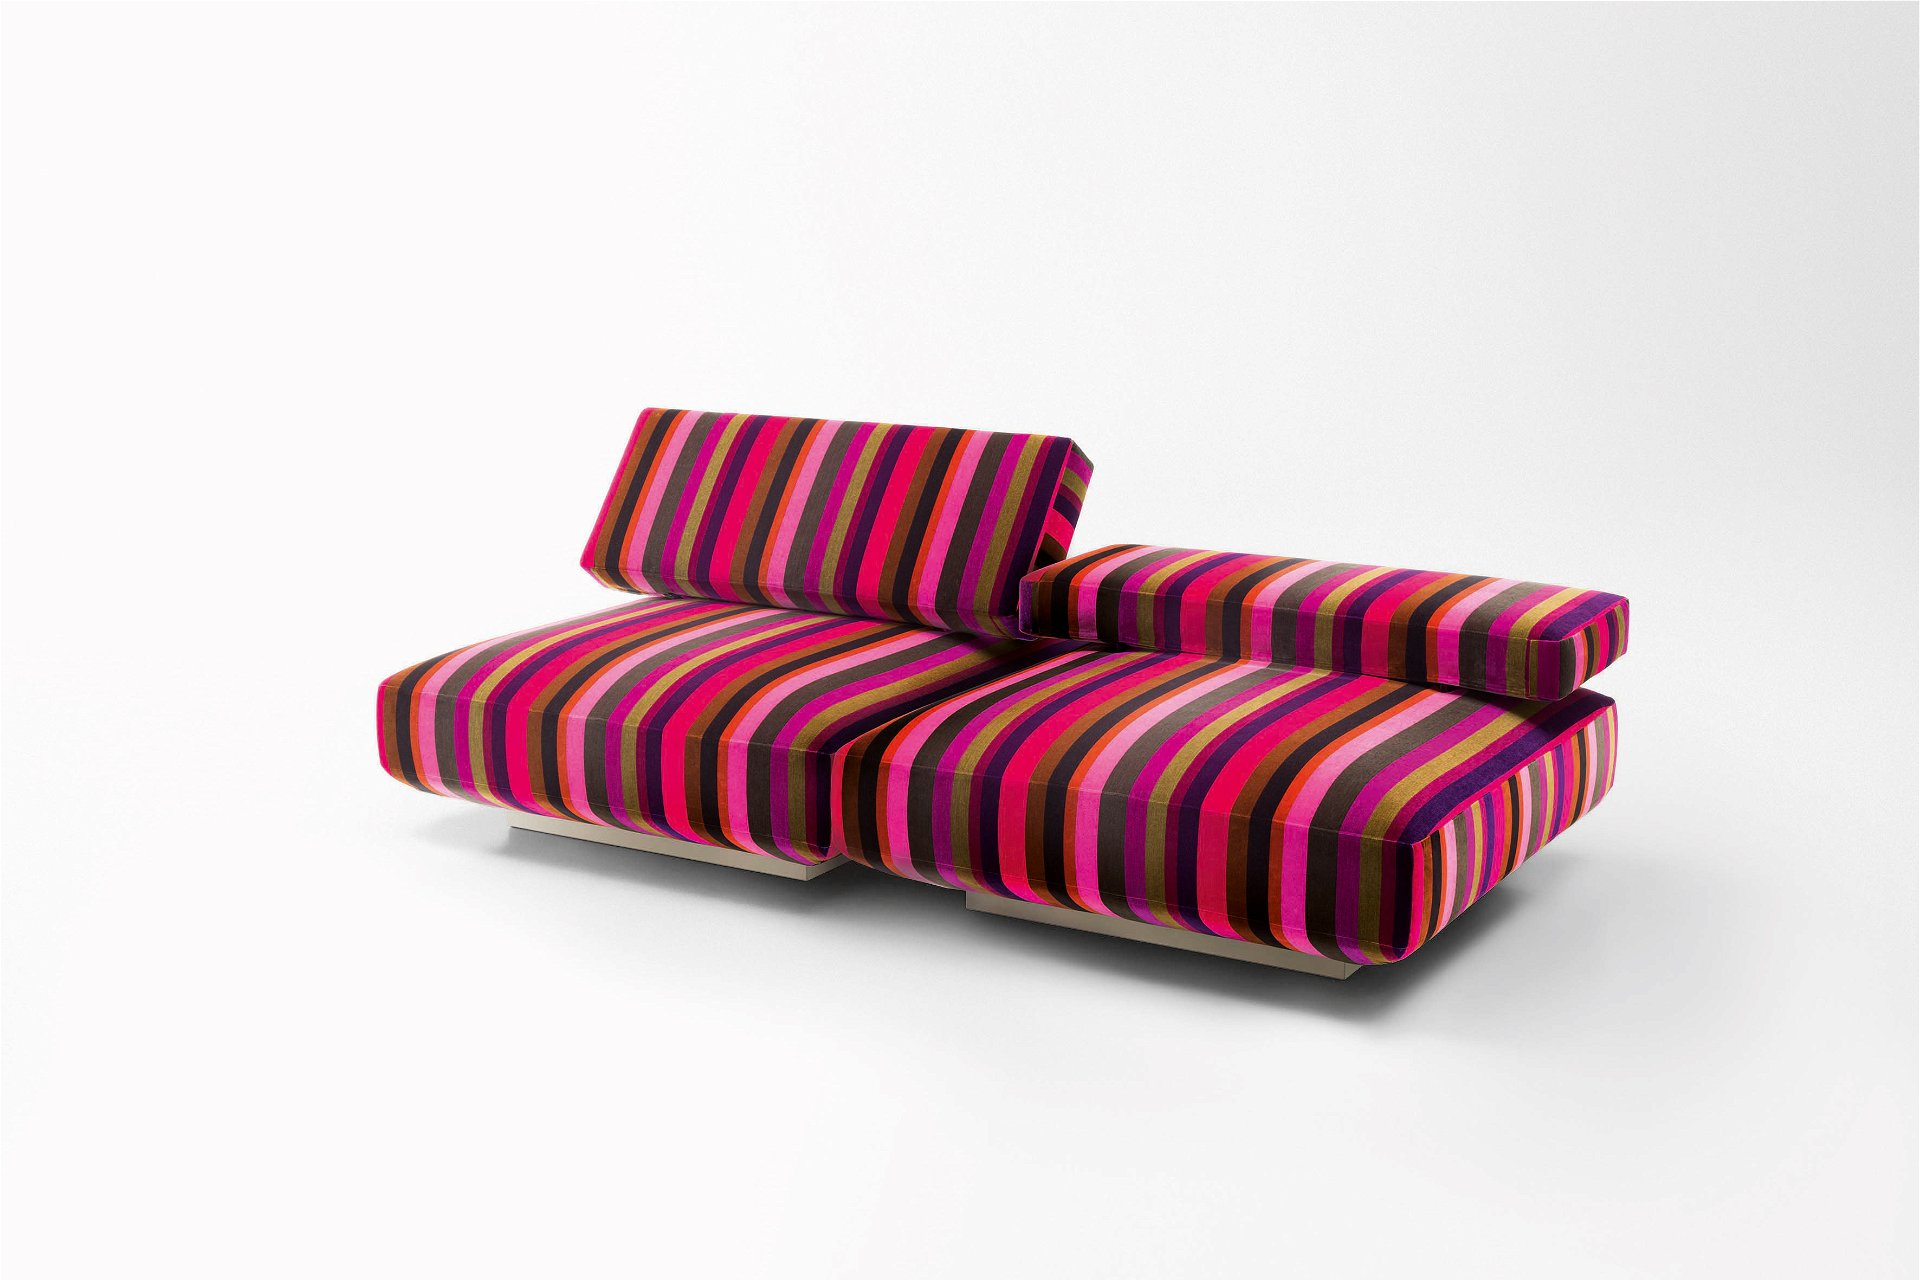 Beschwingt: Die Sitzmöbel aus der Kollektion »Agio« versprühen die Freude an Farben und einem Faible für Streifen.